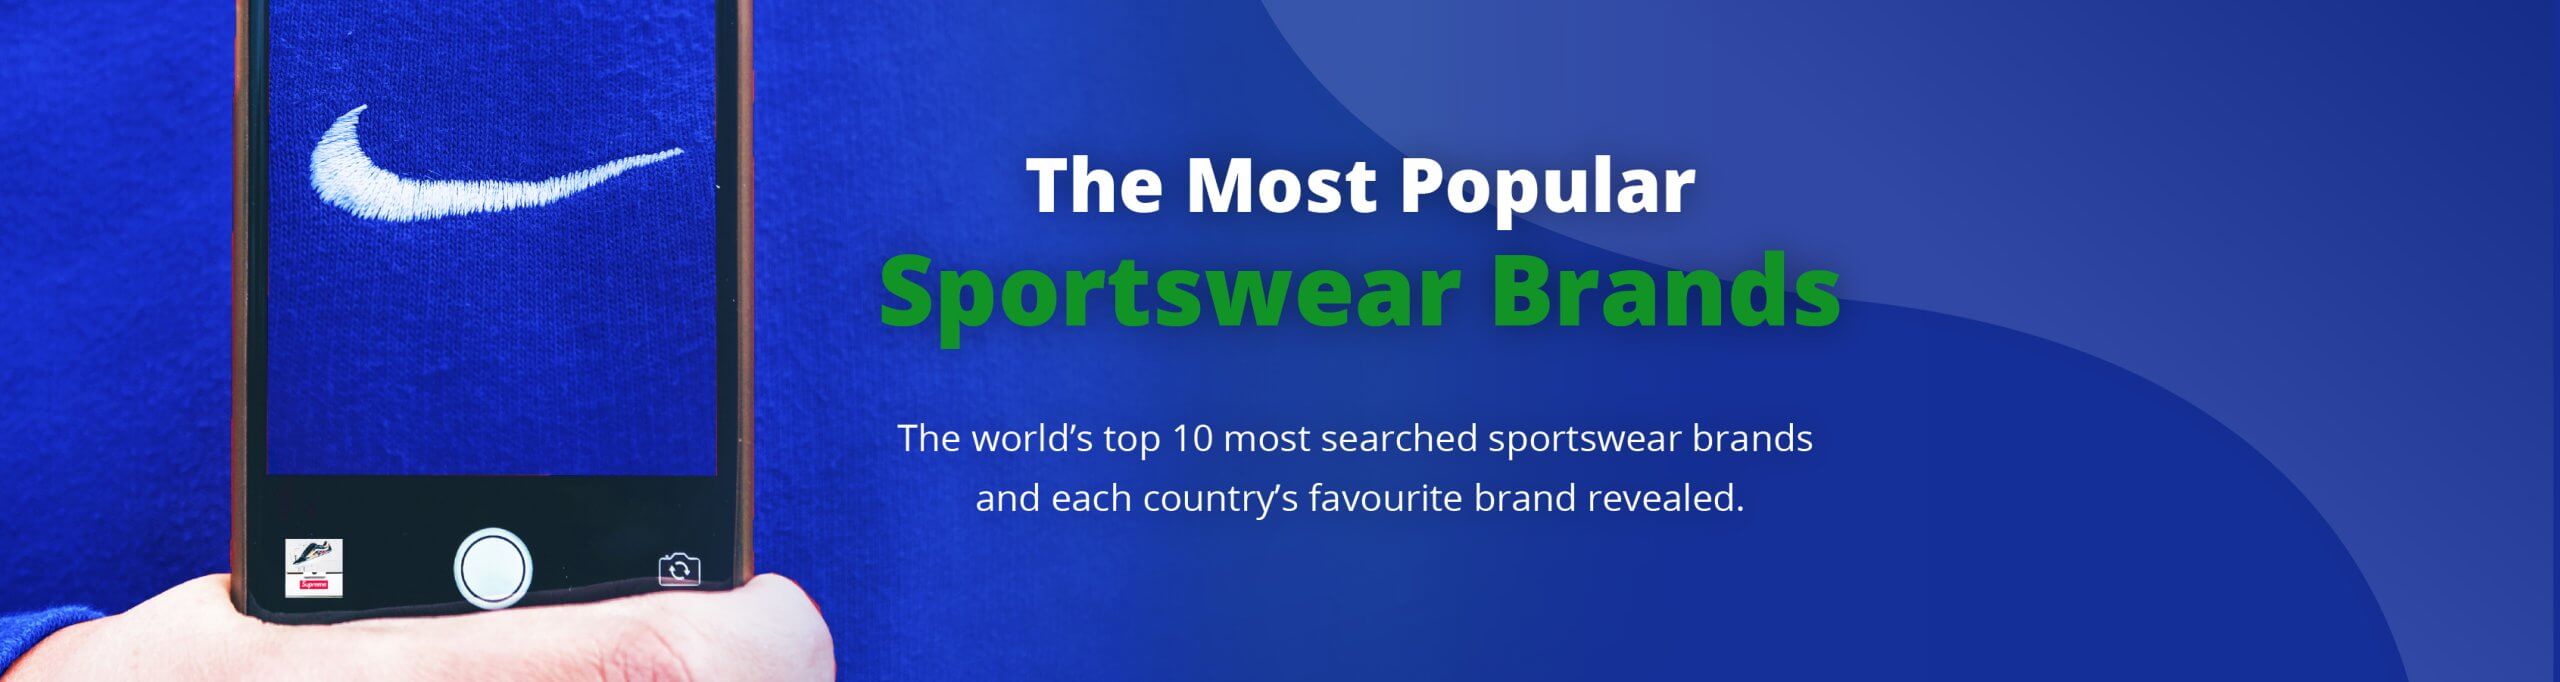 The Most Popular Sportswear Brands